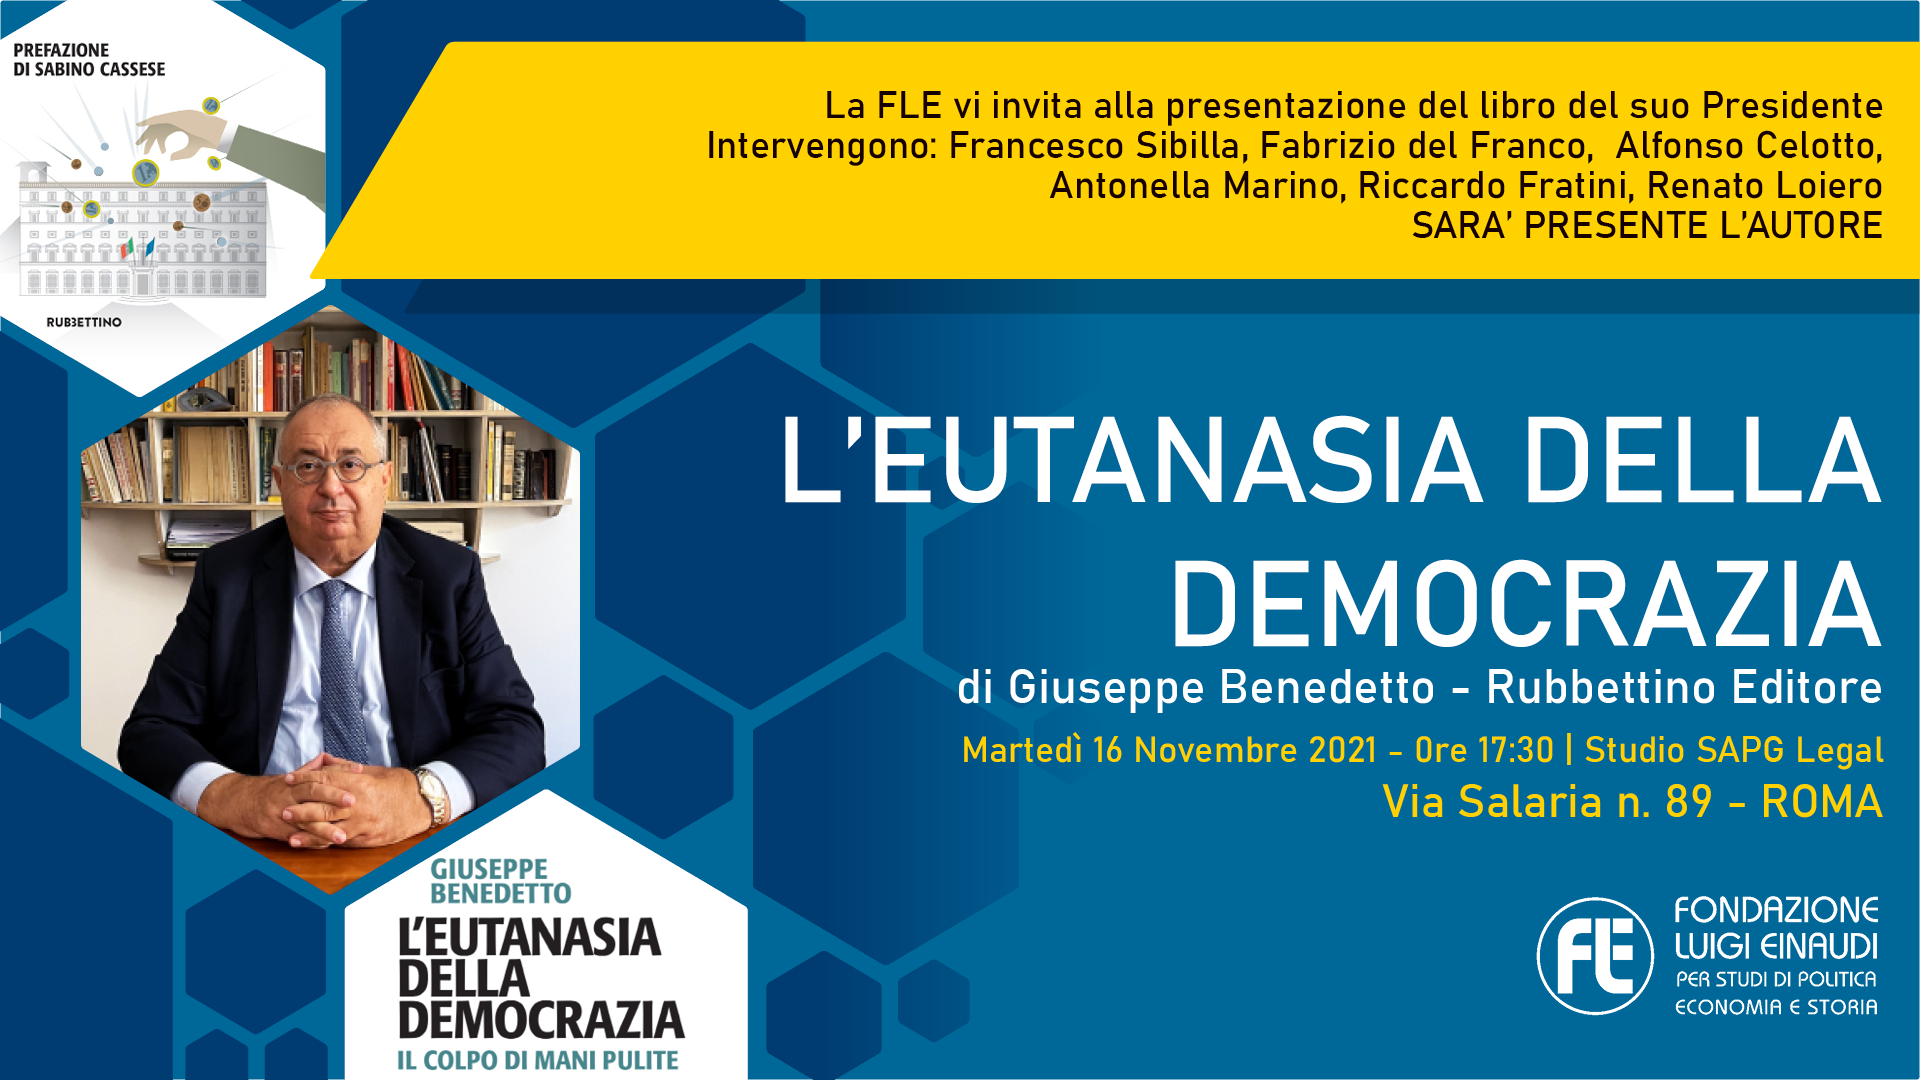 Presentazione libro “L’eutanasia della democrazia” – 16 novembre 2021, Studio SAPG Legal, Roma